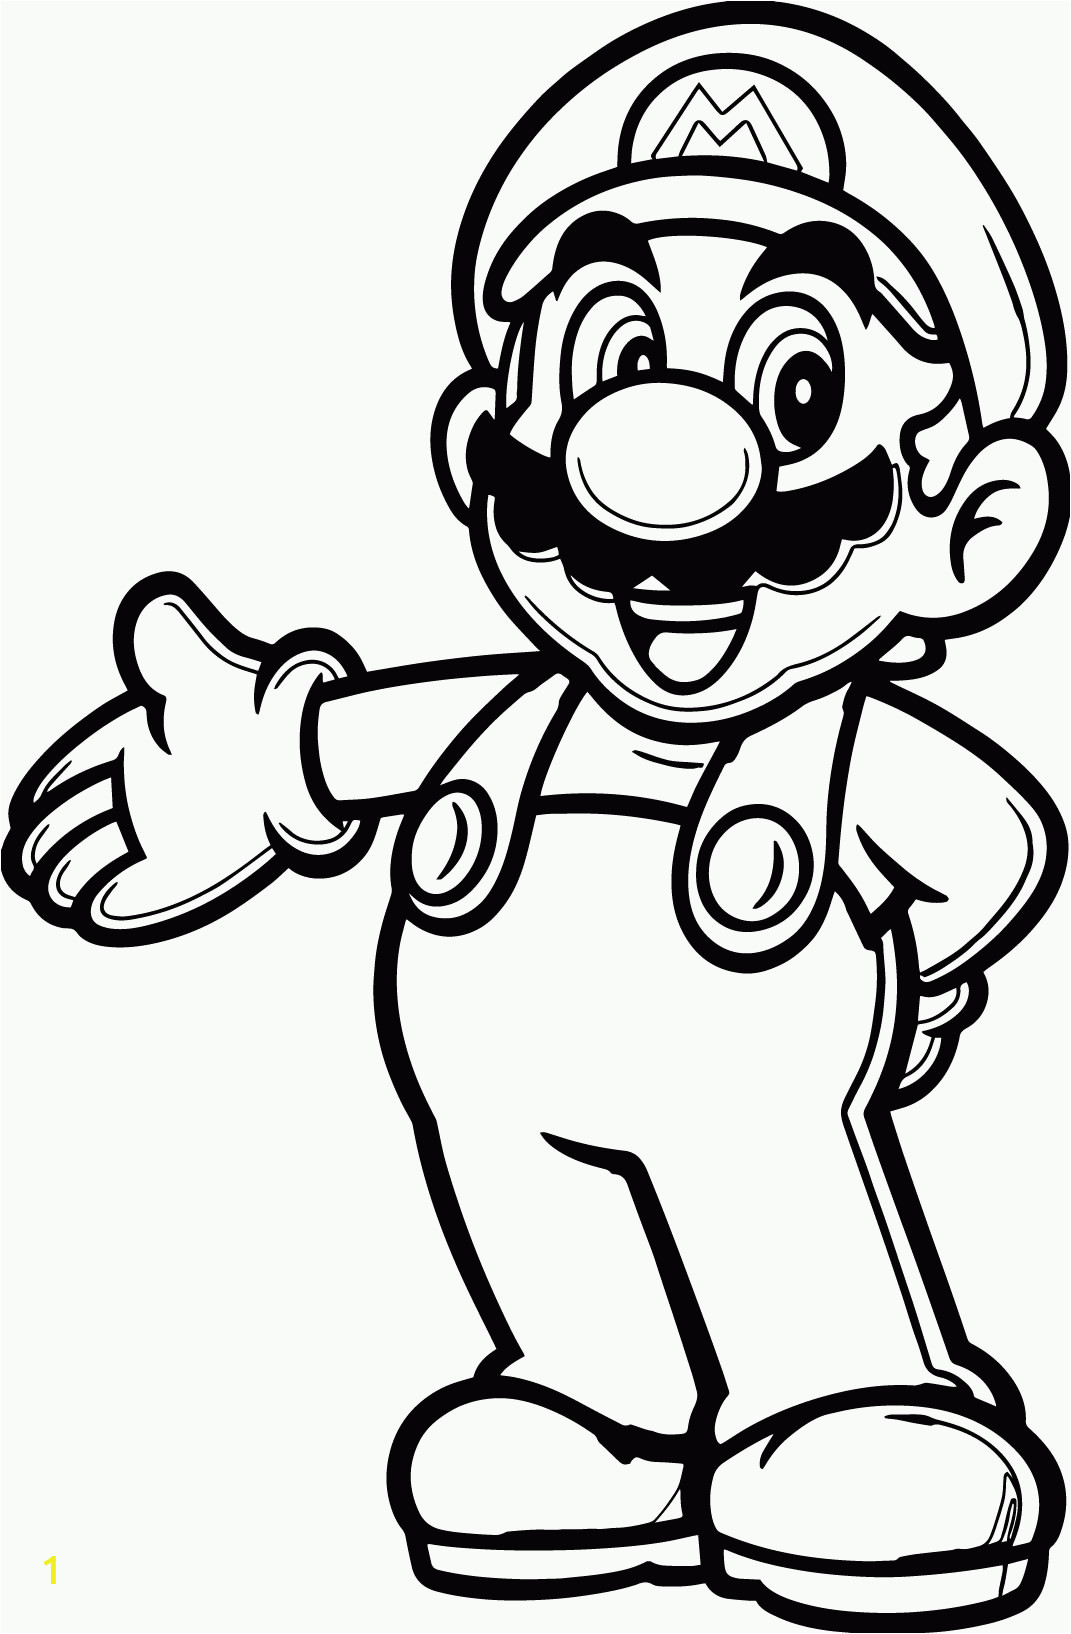 Super Mario Bros Coloring Pages to Print Mario Bad Guy Coloring Pages Coloring Home